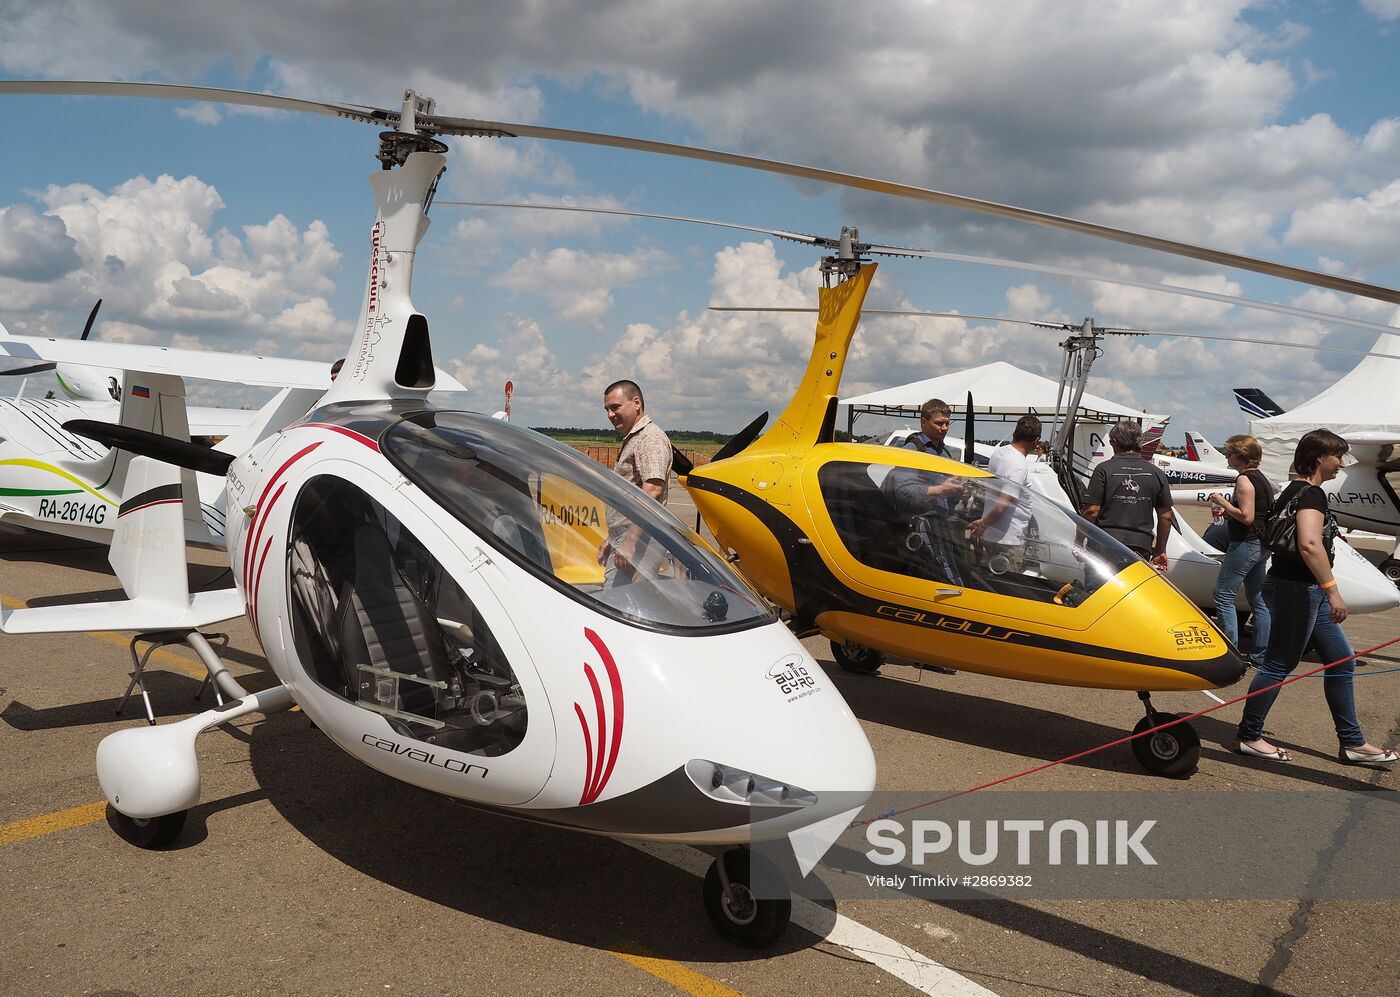 International private aviation festival in Krasnodar Region